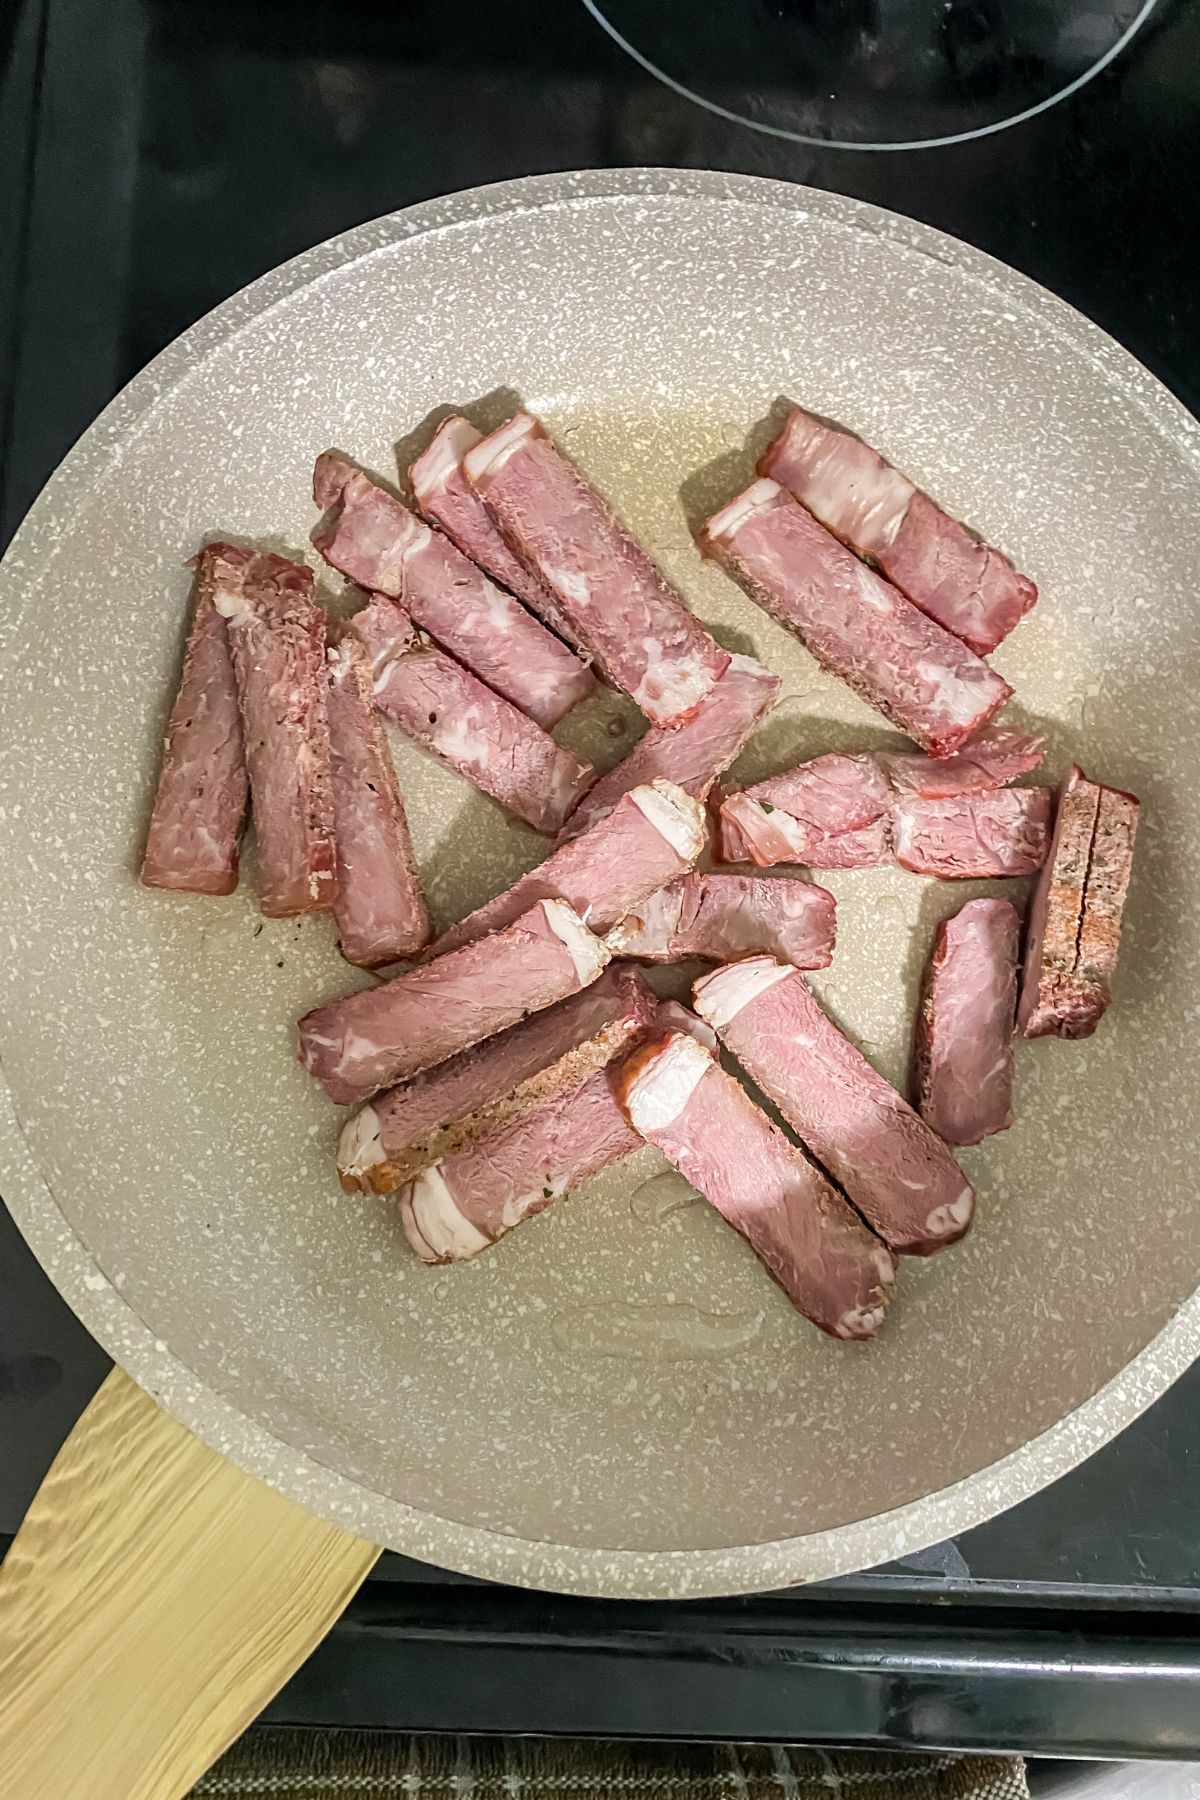 leftover steak in a skillet